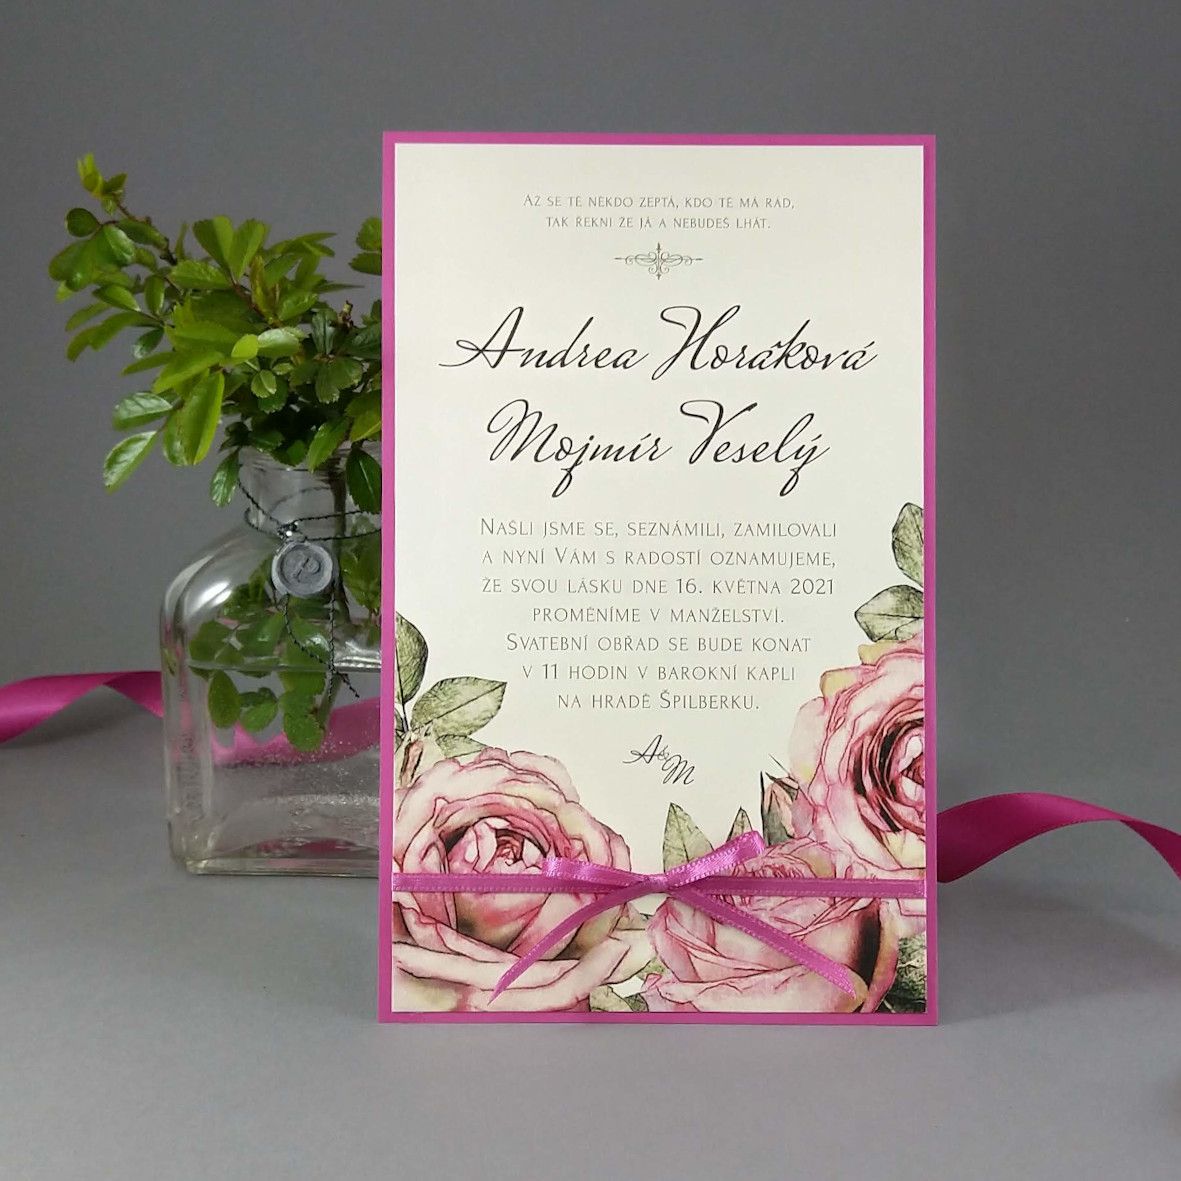 Svatební oznámení – kašírovaná karta s vintage růžemi a atlasovou stužkou; barva fuchsiová, krémová a růžová